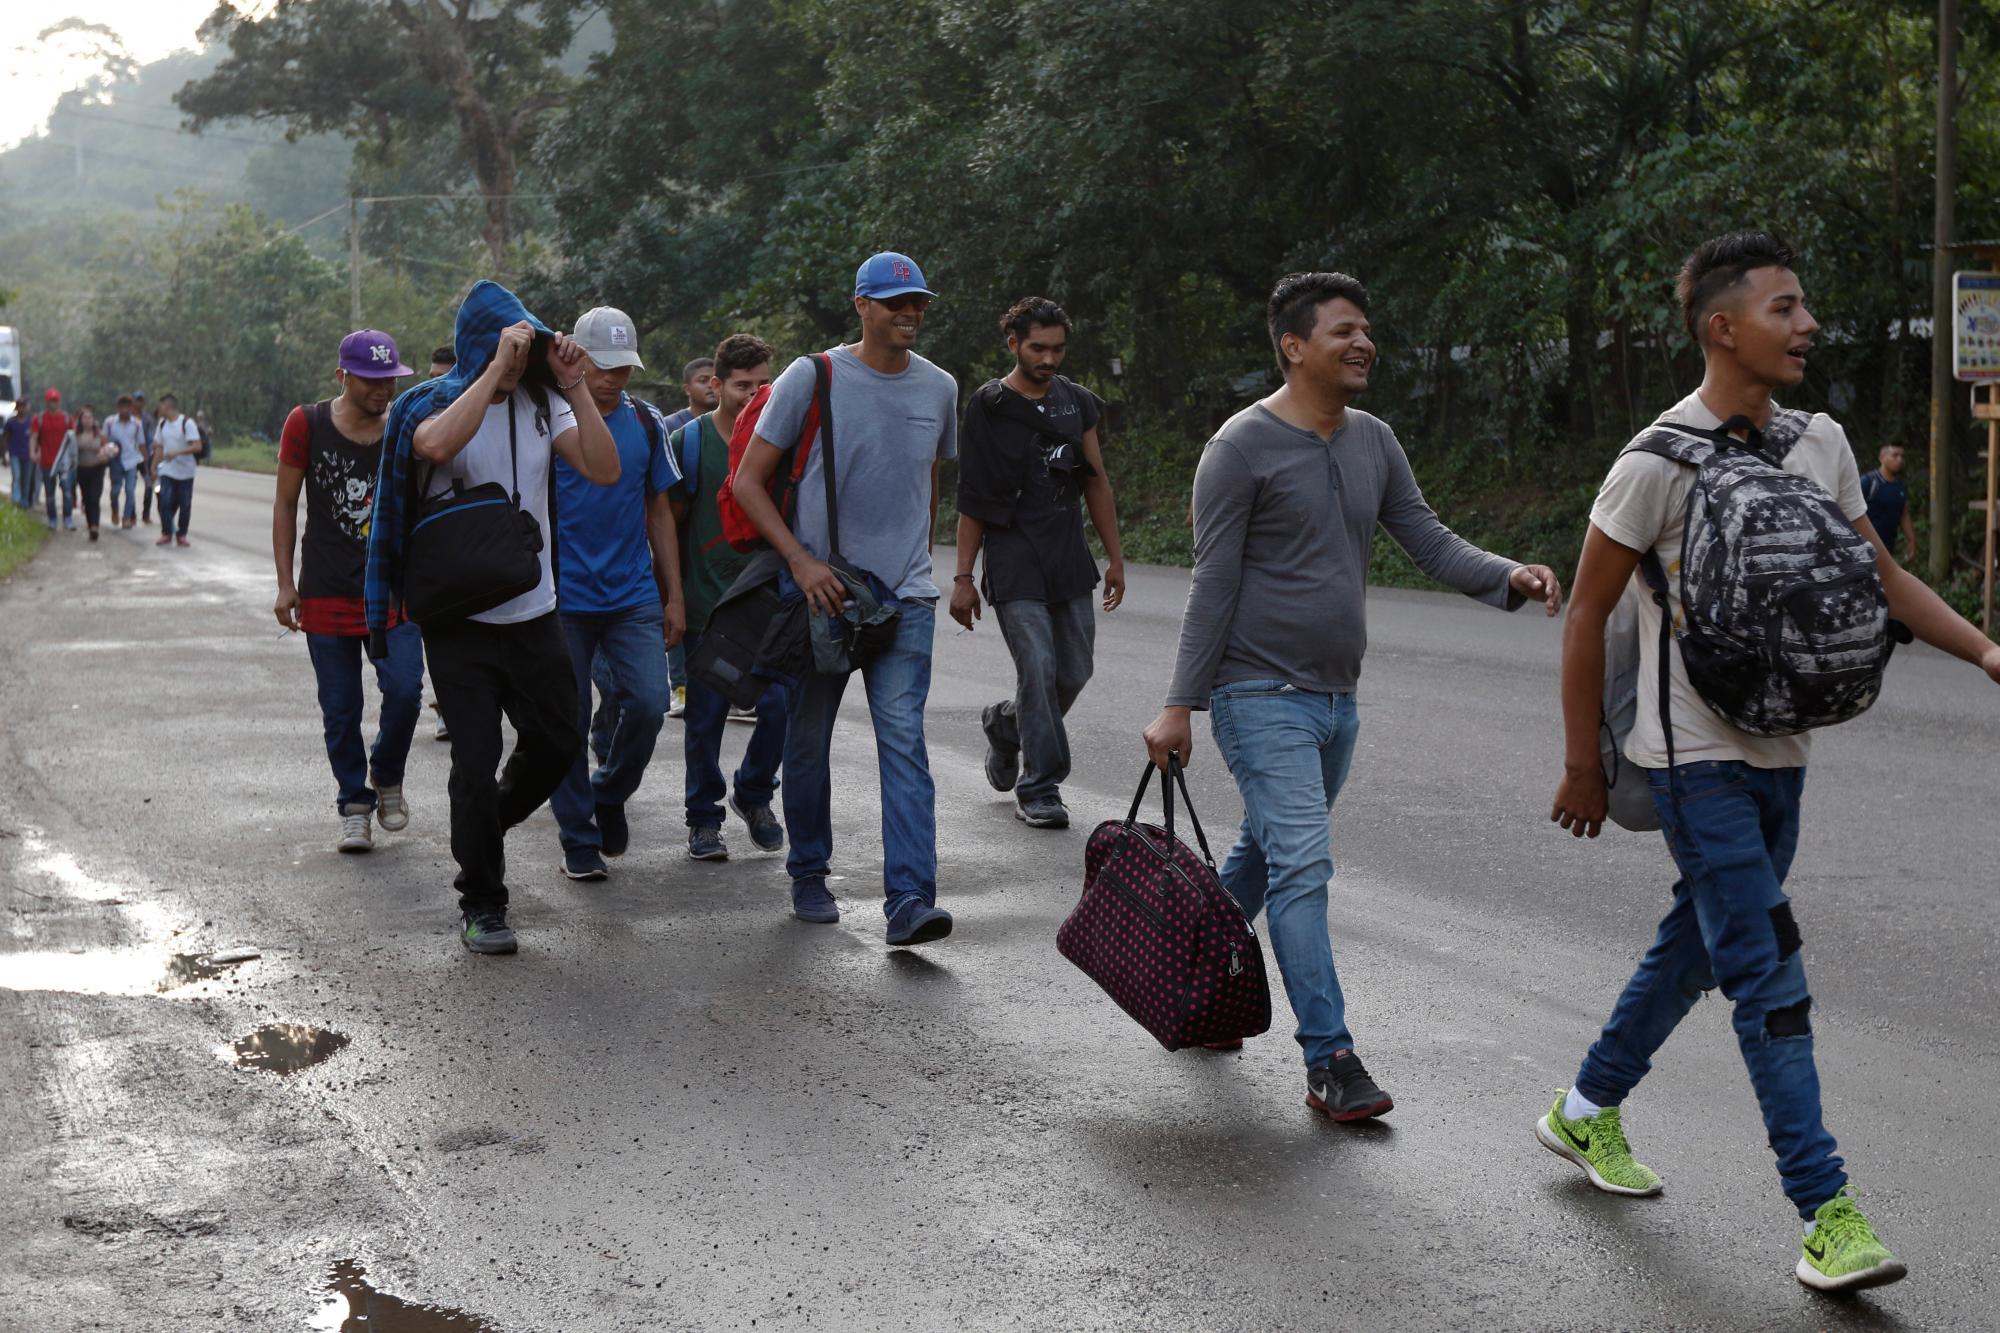 Los migrantes que se dirigen a los Estados Unidos caminan a lo largo de la carretera al salir de Cofradia, Honduras, el martes 15 de enero de 2019. El lunes por la noche, otra caravana de migrantes centroamericanos partió de Honduras durante la noche para buscar llegar a la frontera de los Estados Unidos en  la misma ruta seguida por miles en al menos tres caravanas el año pasado.